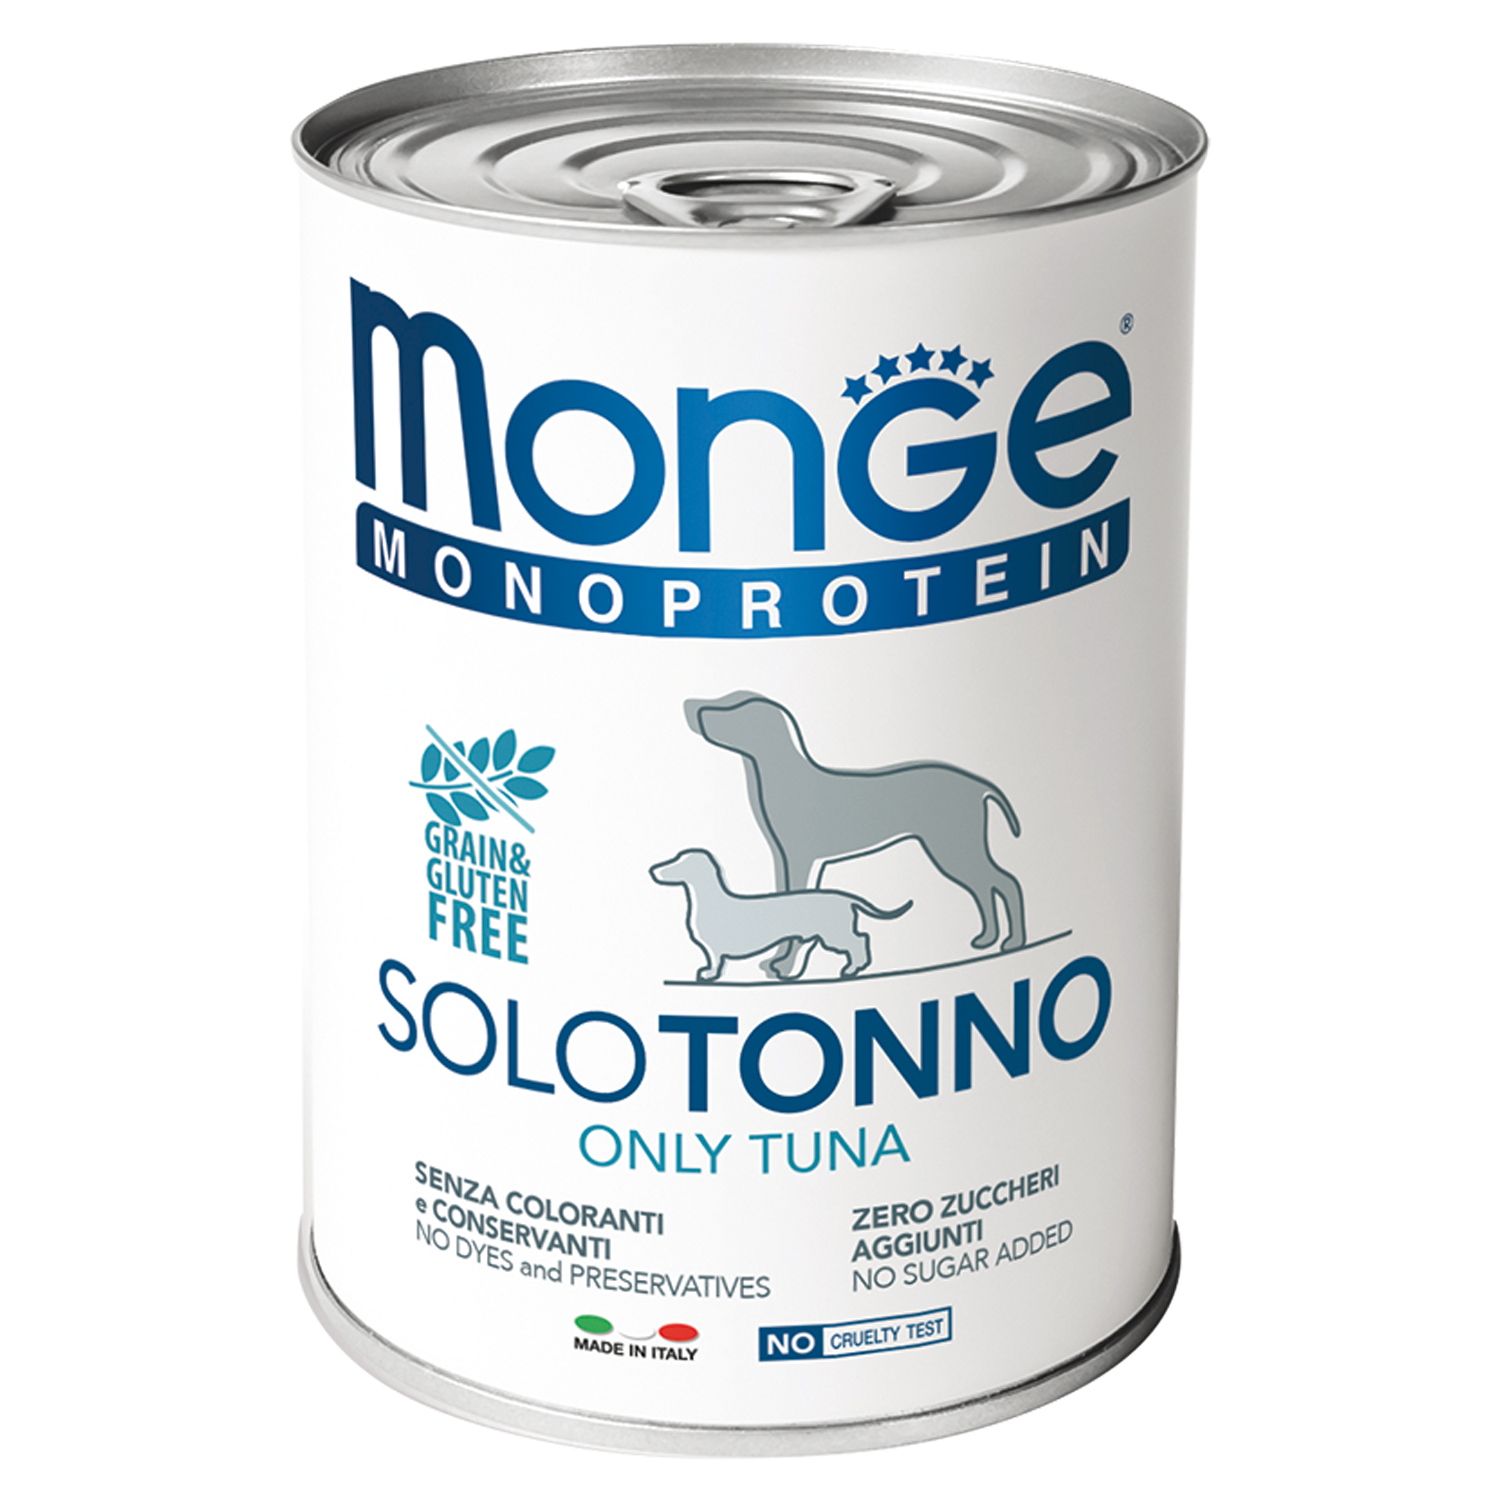 Monge Dog Monoprotein Solo консервы для собак паштет из тунца 400г